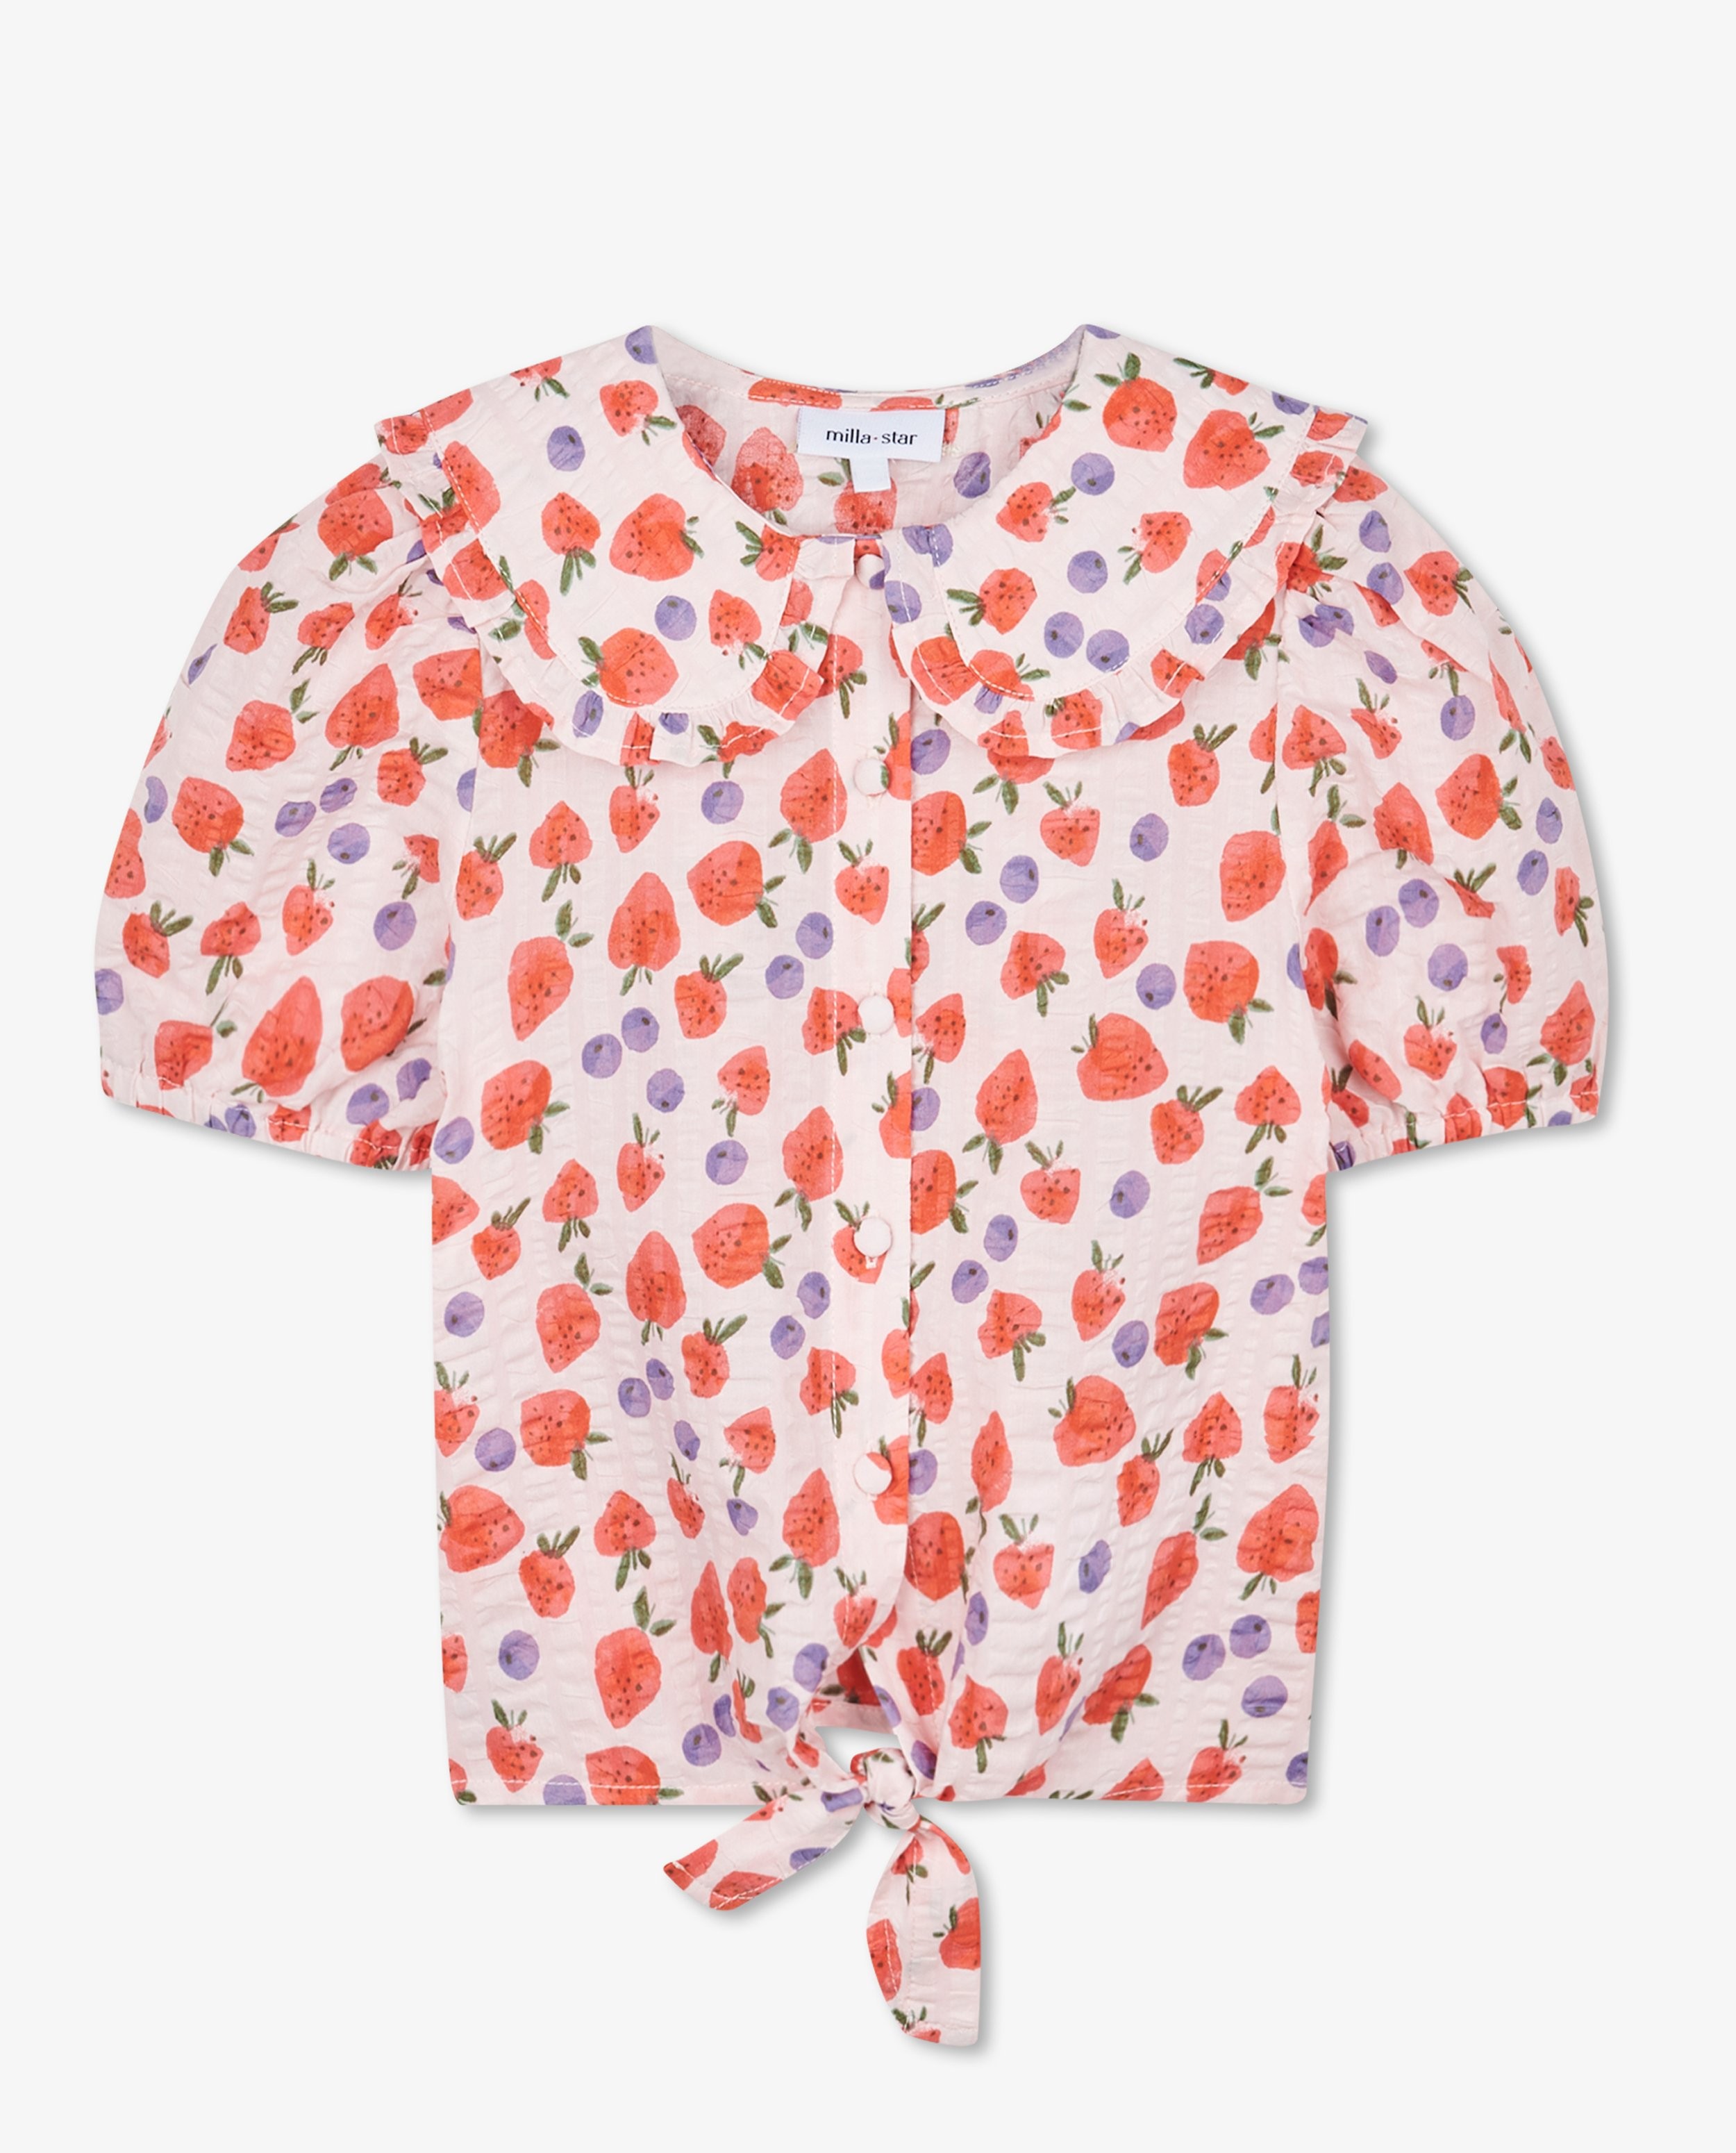 Chemises - Chemisier rose à fraises et baies